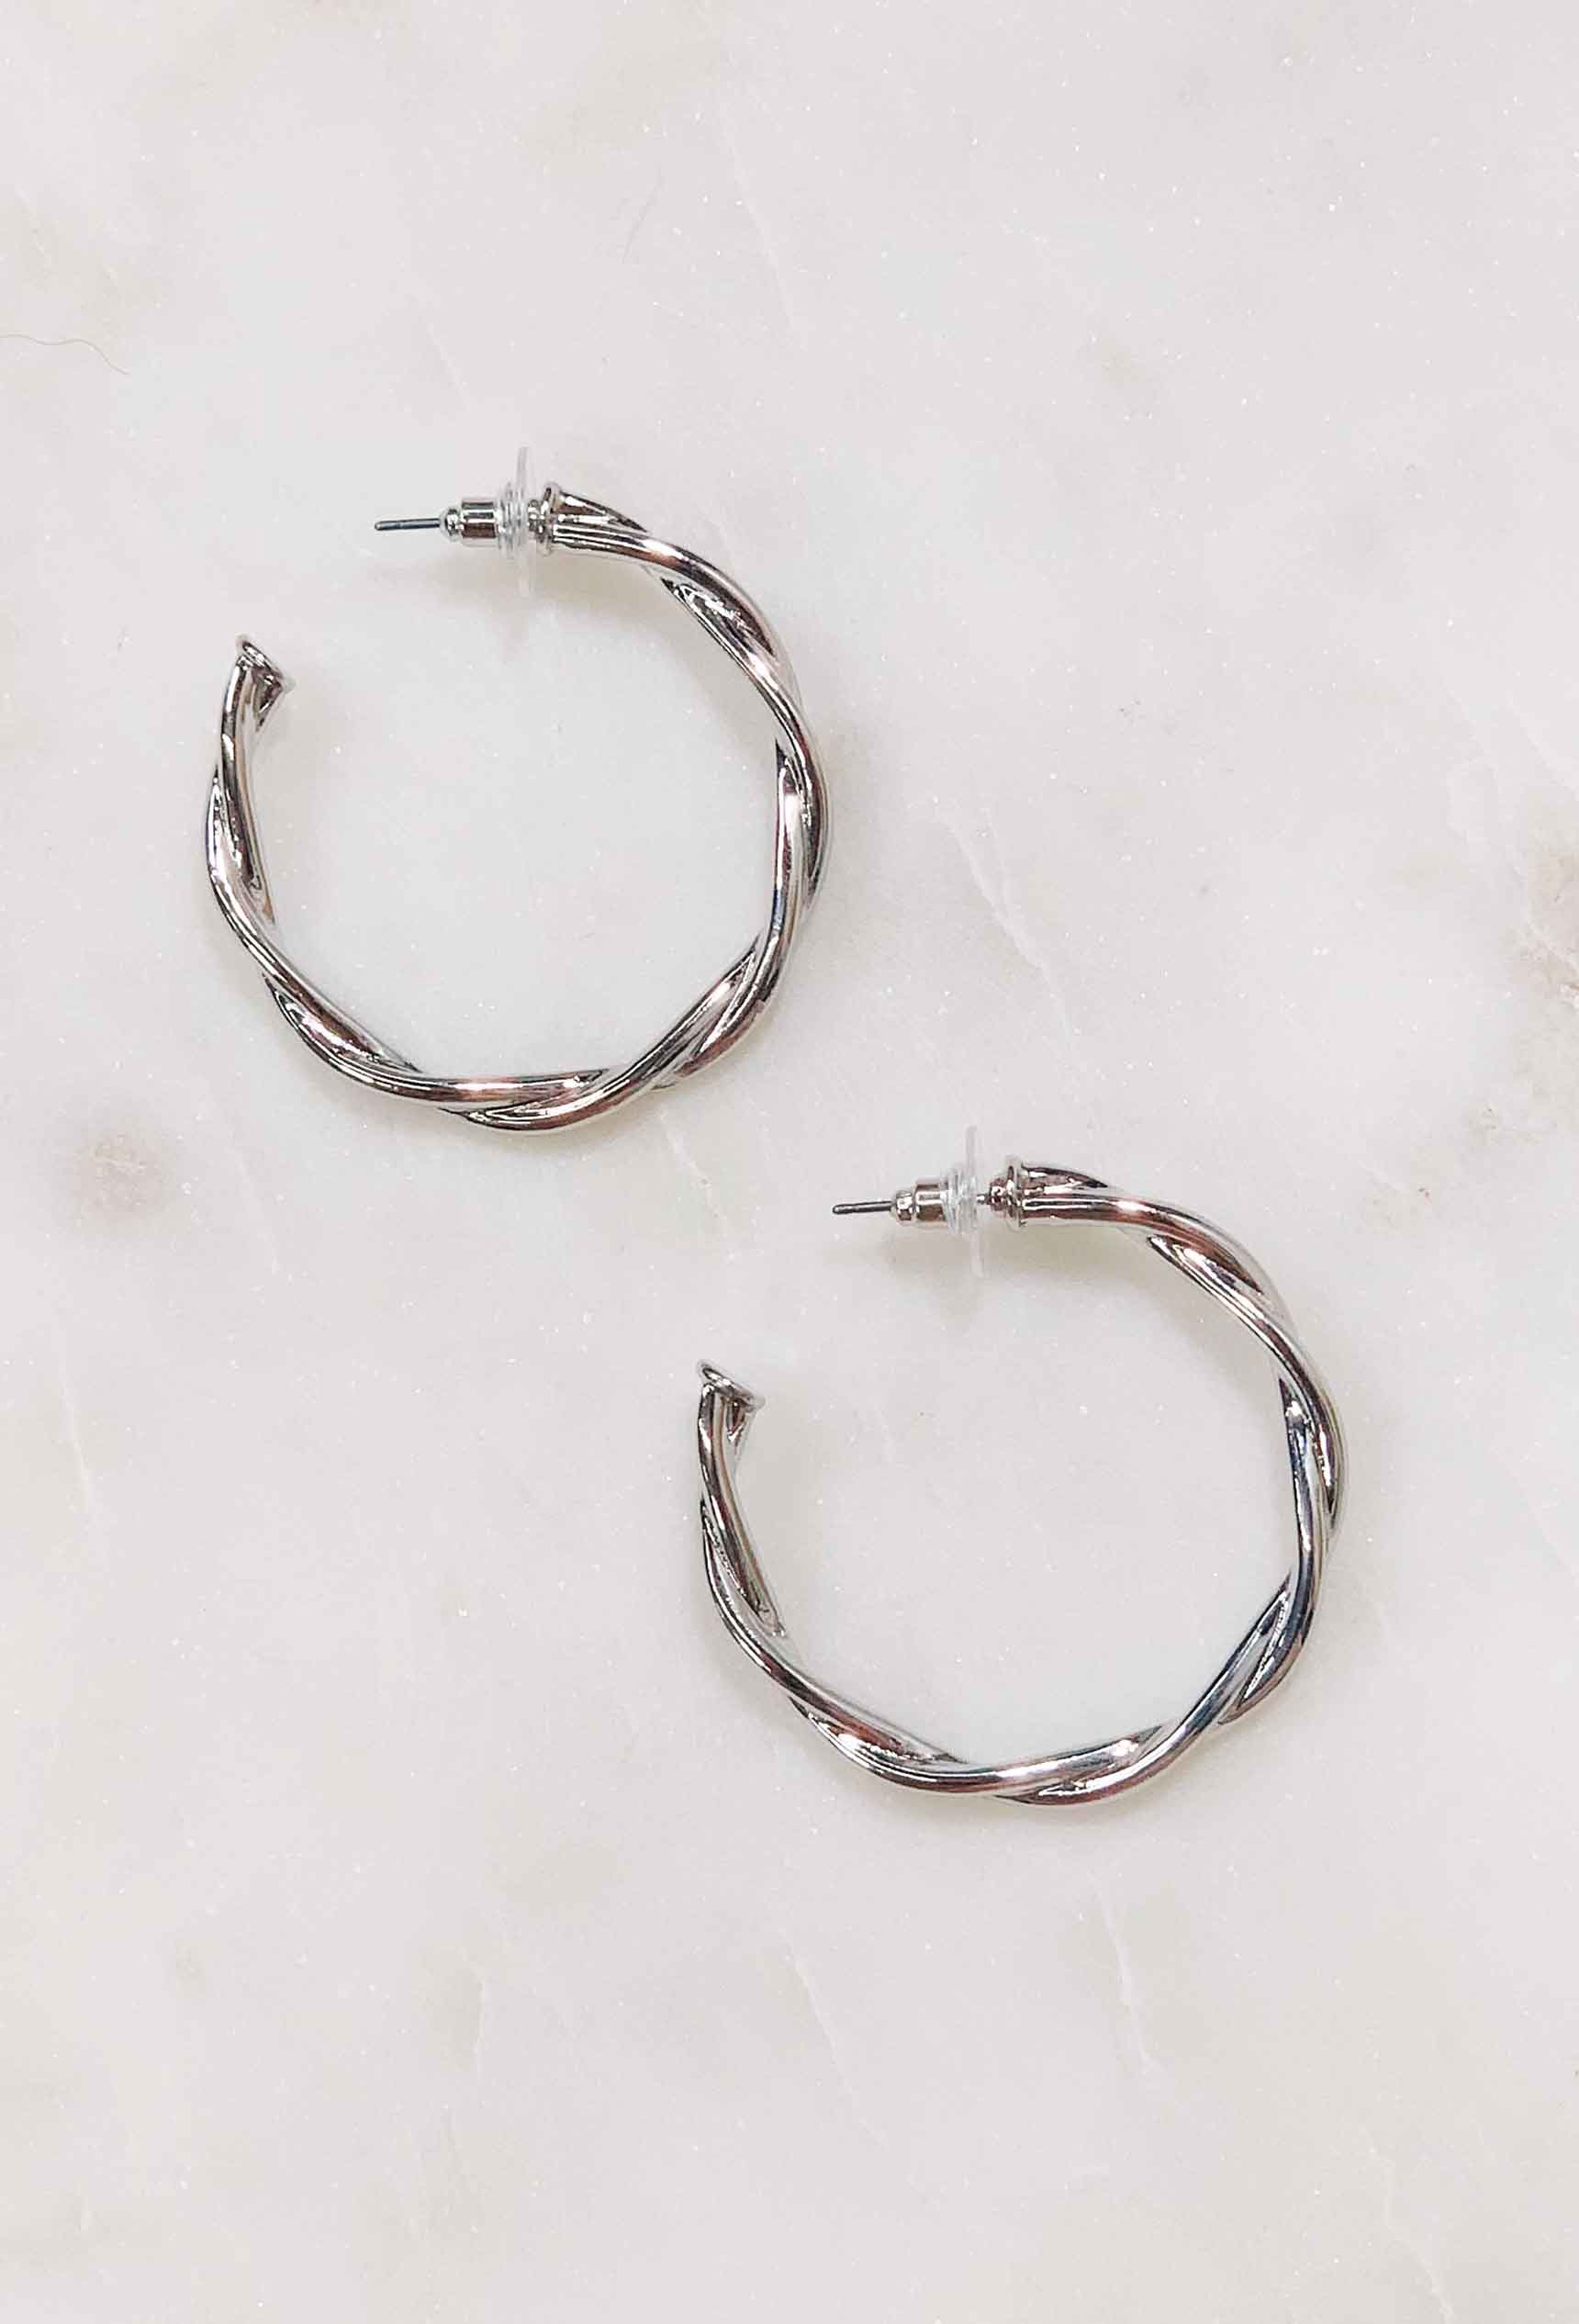 Amanda Earrings - Mixed metal hoop earrings